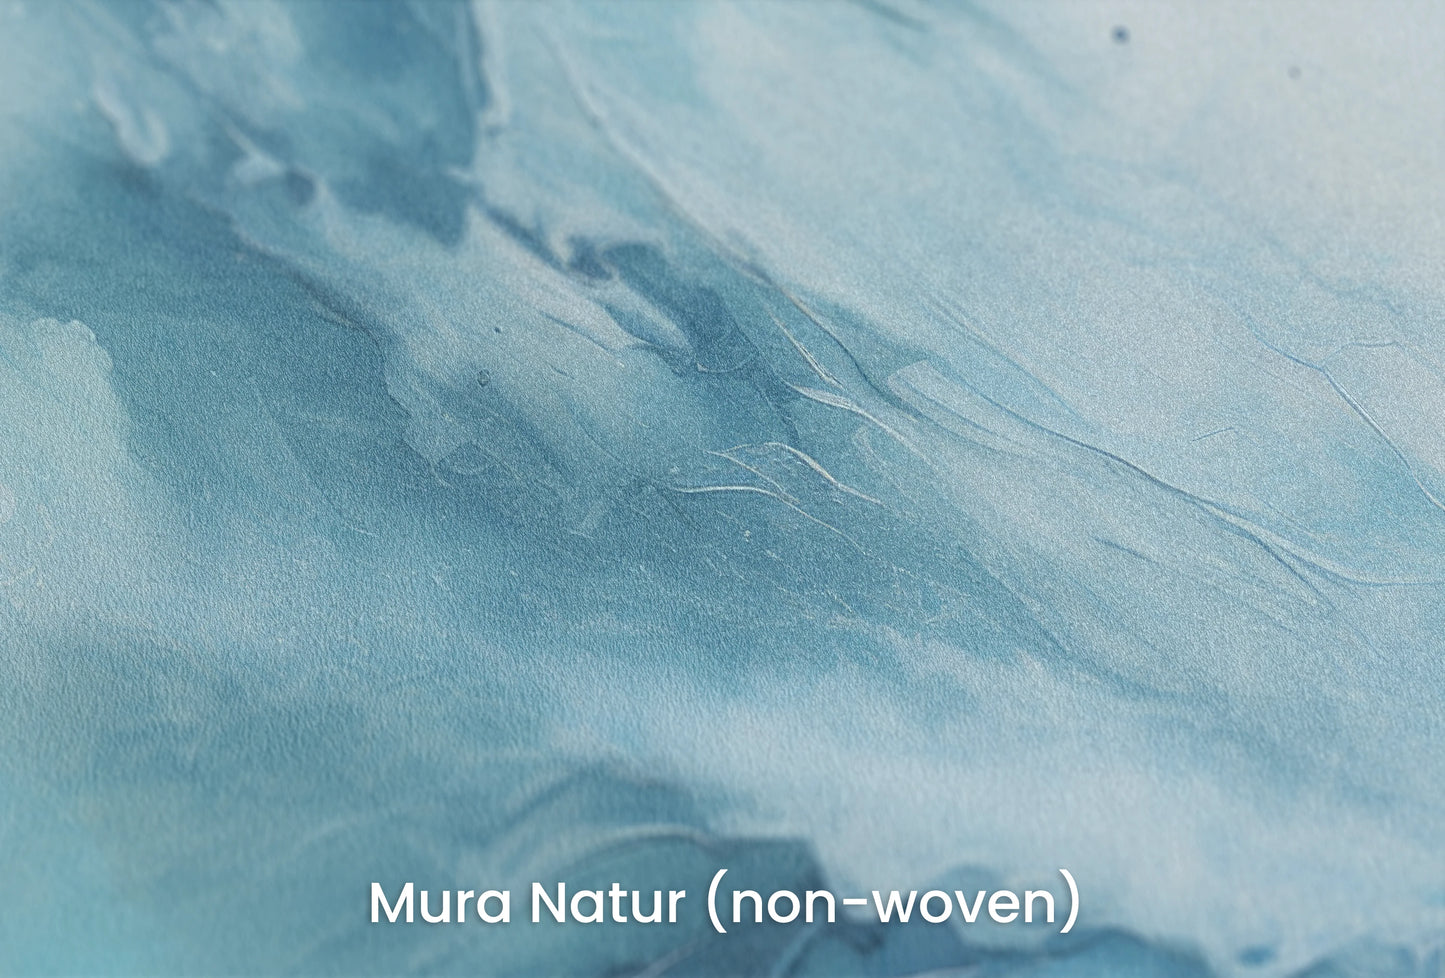 Zbliżenie na artystyczną fototapetę o nazwie Terran Rise na podłożu Mura Natur (non-woven) - naturalne i ekologiczne podłoże.